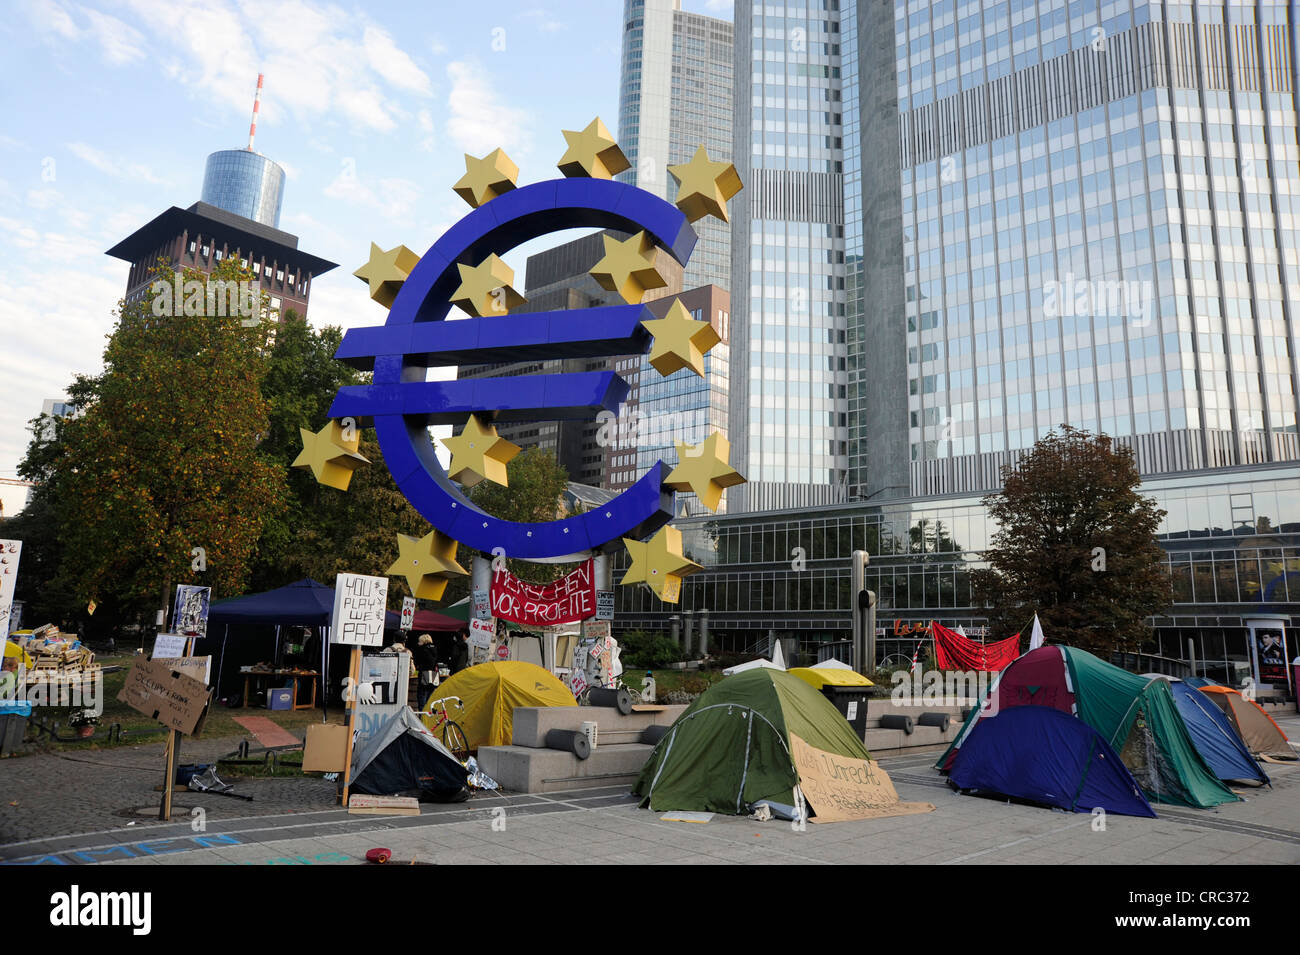 Campamento de protesta del movimiento ocupan Frankfurt, manifestación contra el sistema financiero delante del símbolo del euro Foto de stock